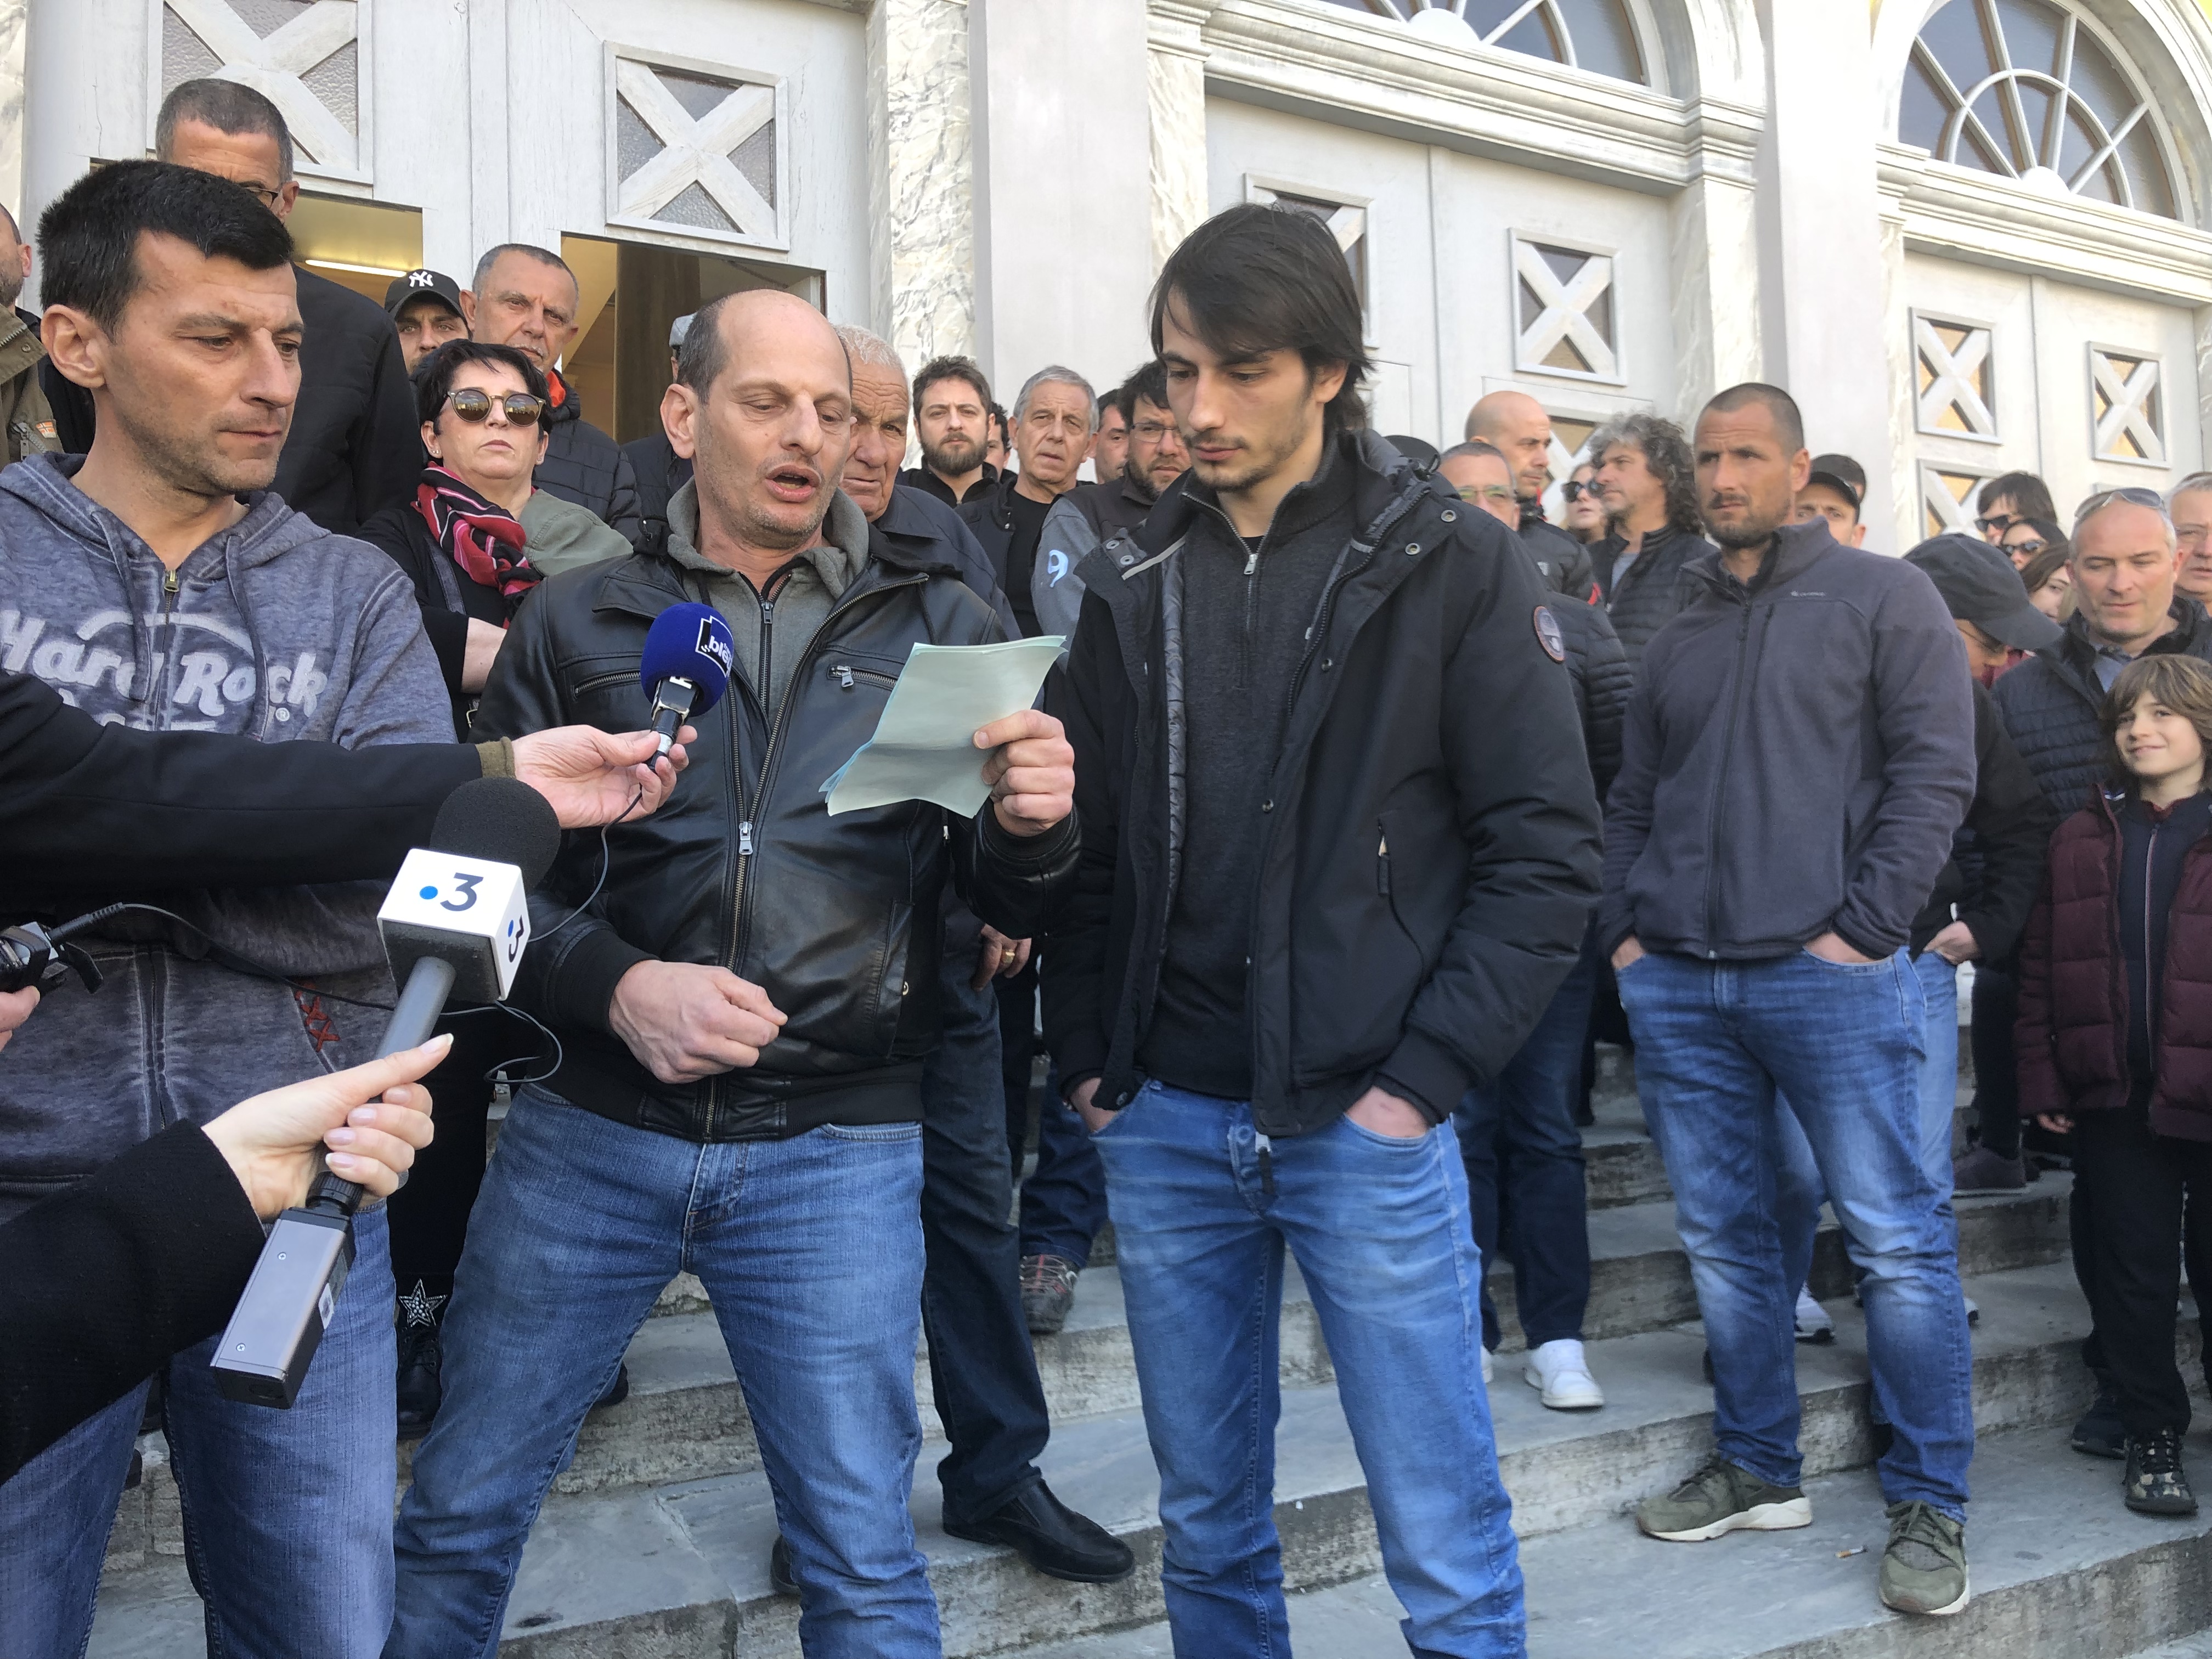 Benedetti, Dominici, Tomasi, refusent de se présenter devant le TGI de Bastia